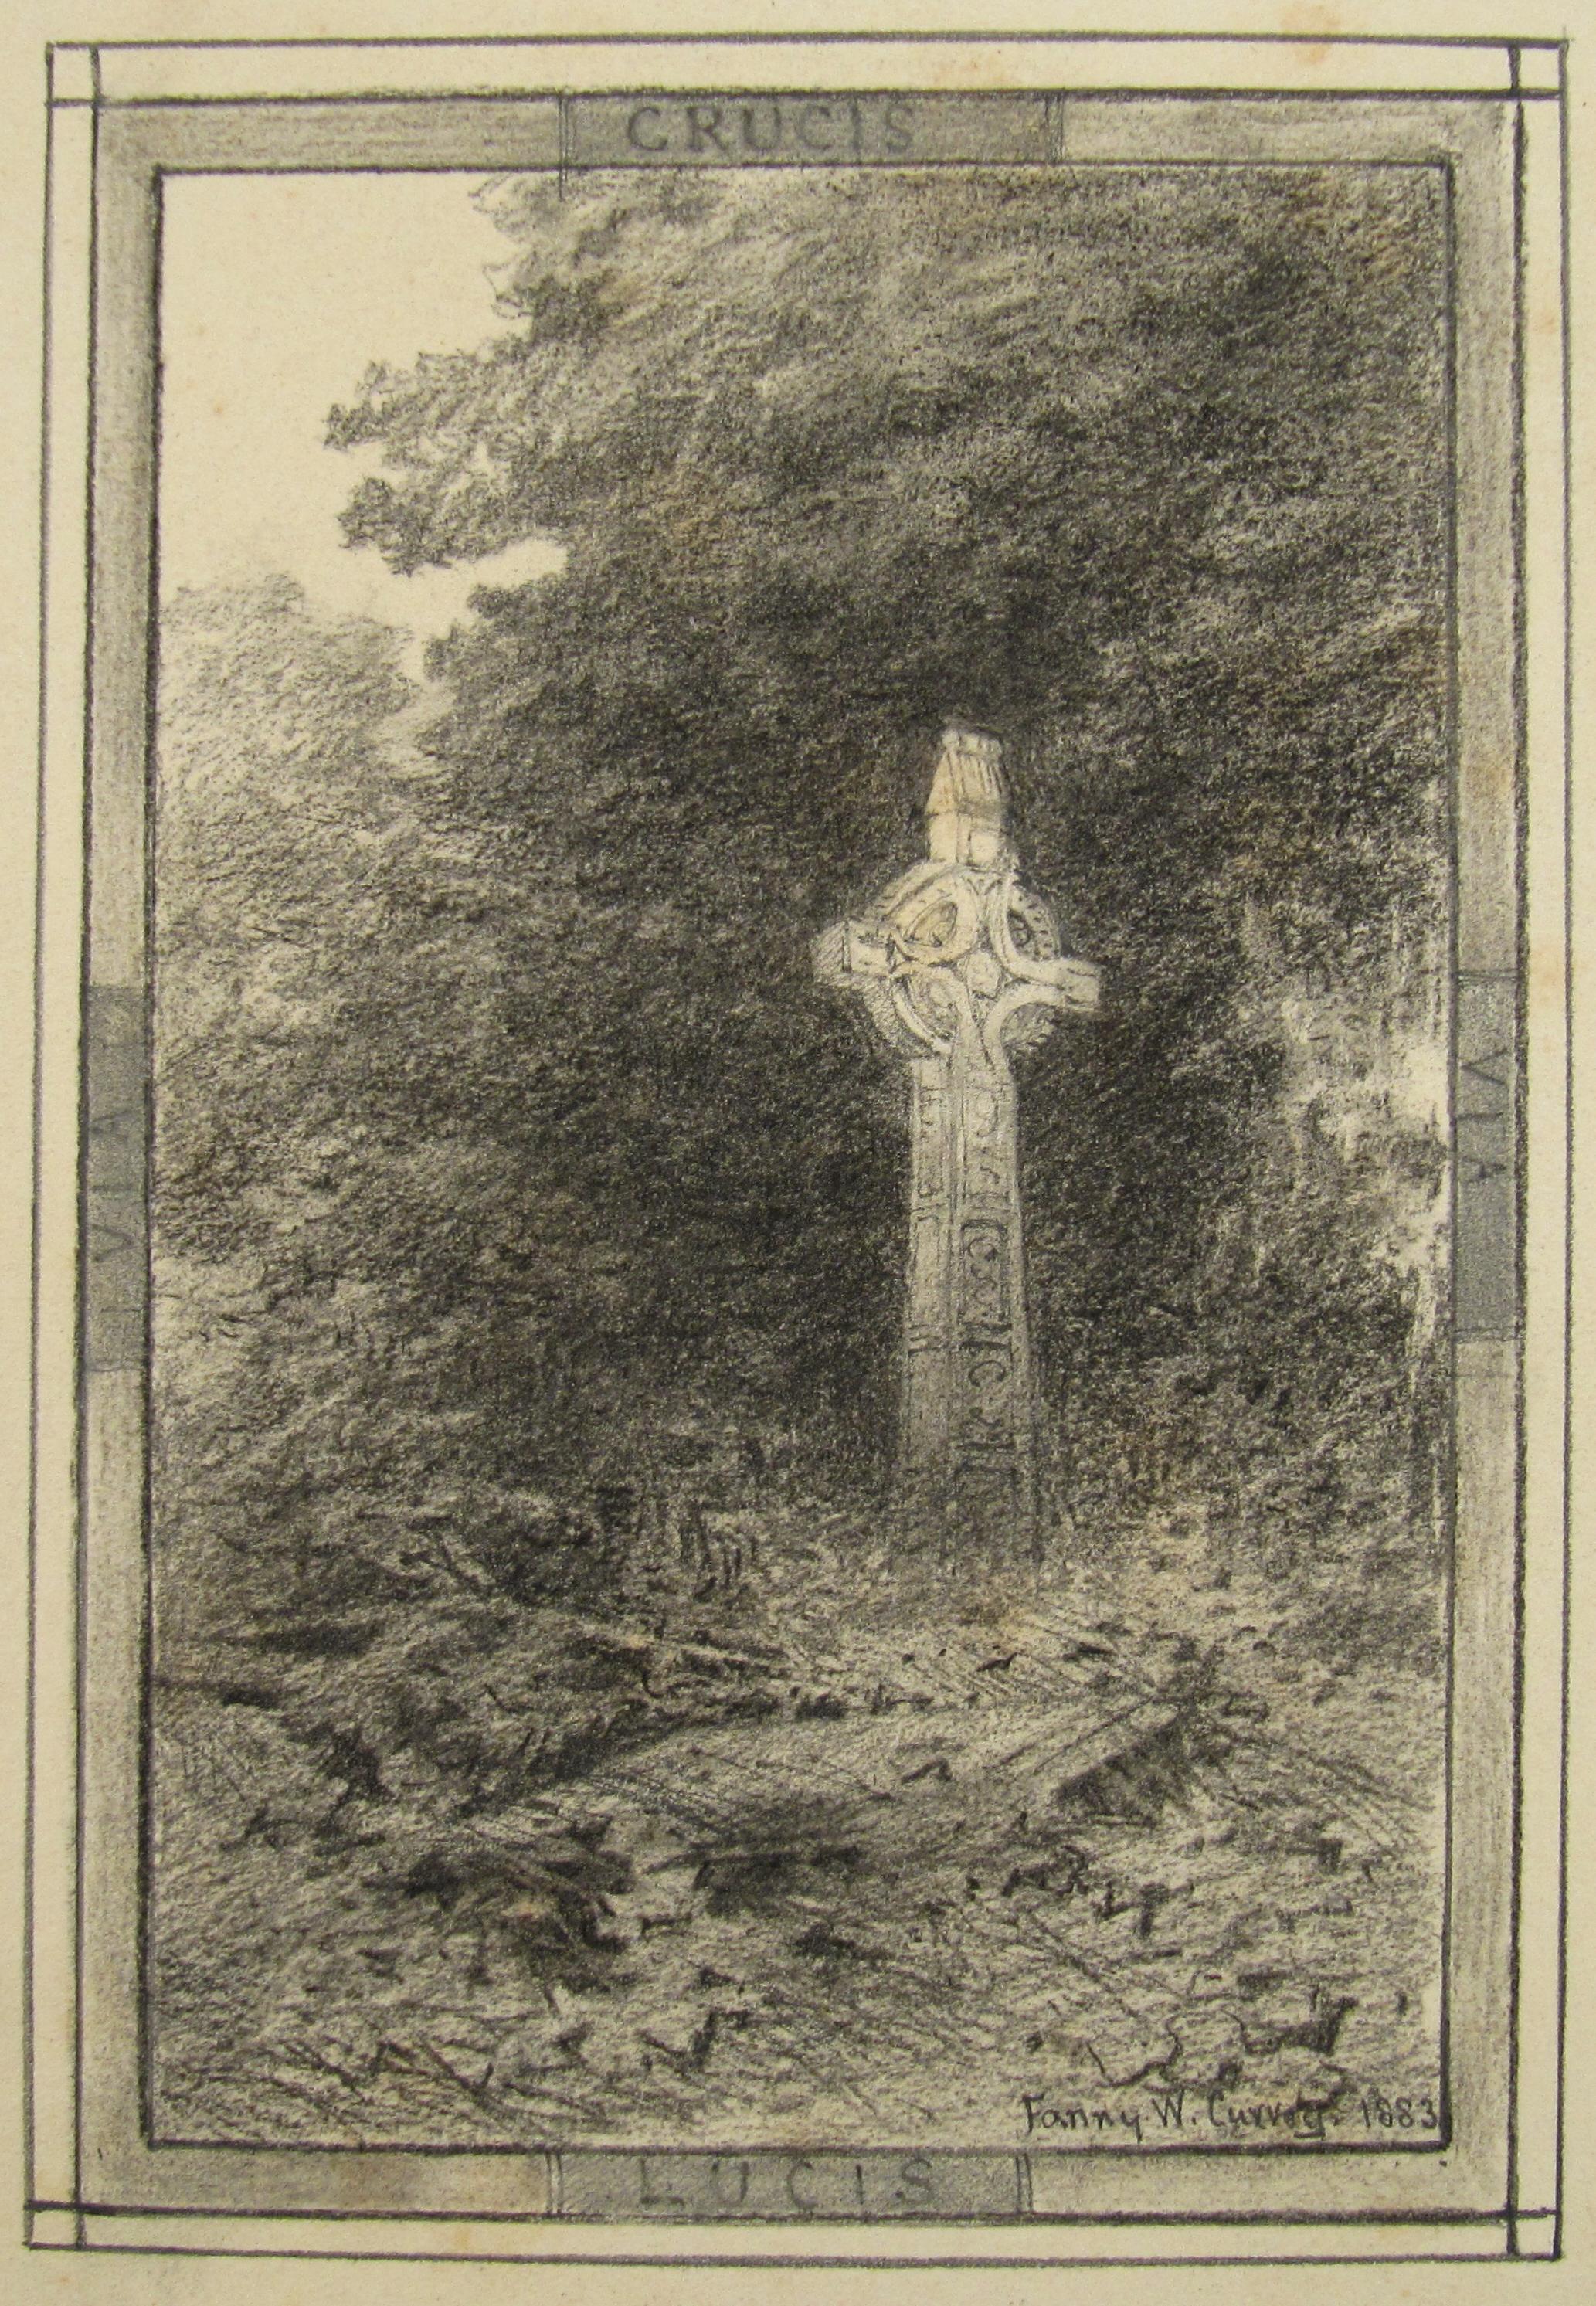 Fanny W. Currey (Irlande) dessin du 19e siècle représentant une croix celtique - Via Crucis Via Lucis